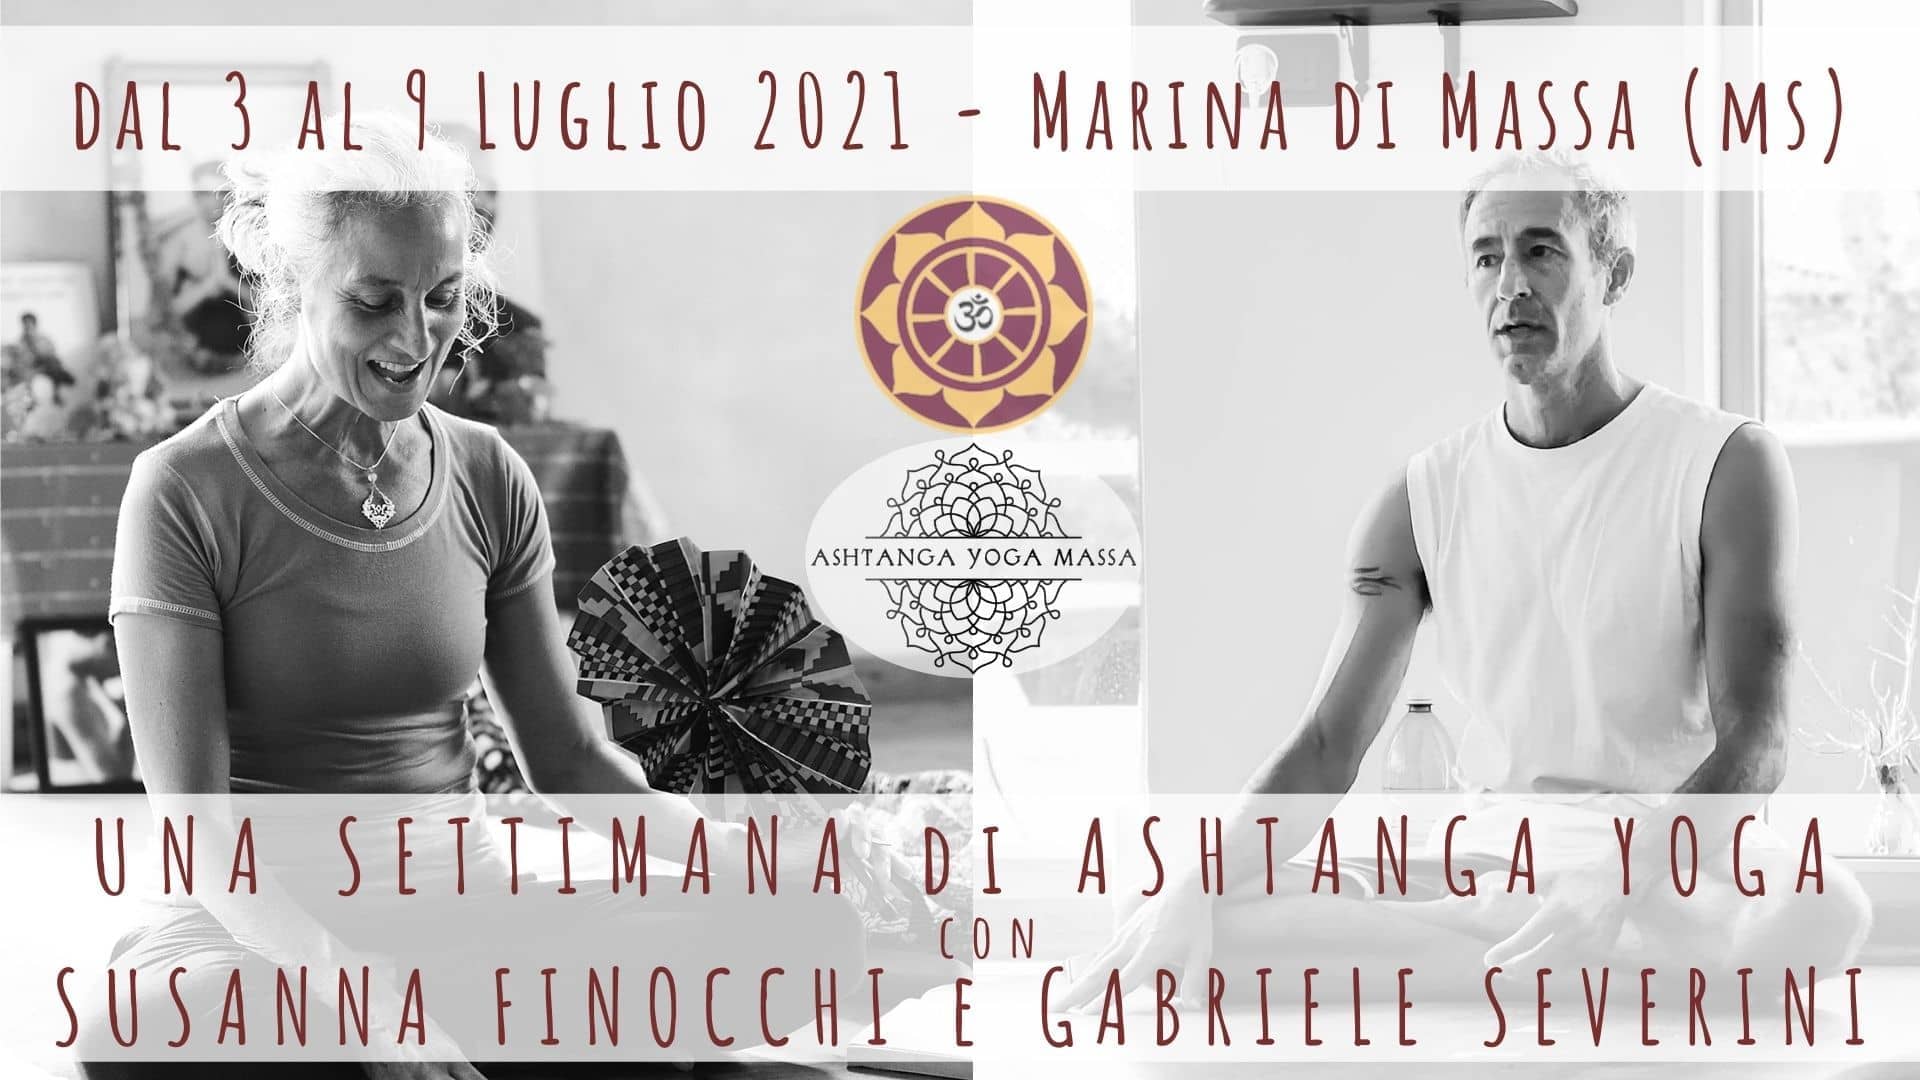 Una settimana di Ashtanga Yoga con Susanna Finocchi e Gabriele Severini, seminario dal 3 al 9 Luglio 2021 a Marina di Massa in Toscana